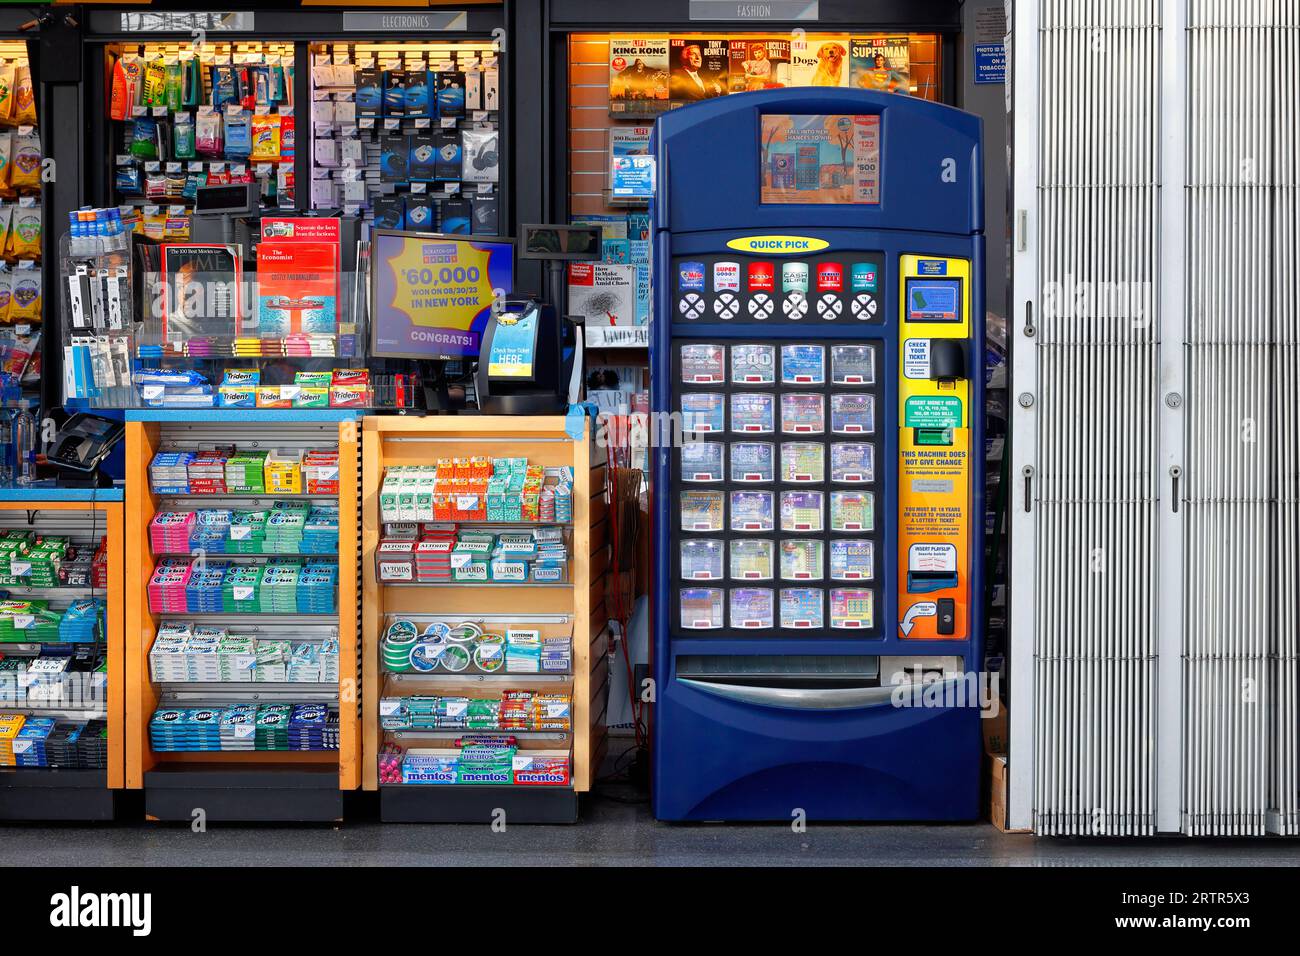 Ein Hudson News 24-Stunden-Geschäft mit einem New York State Scratch Off Lotto-Kartenautomaten. Stockfoto